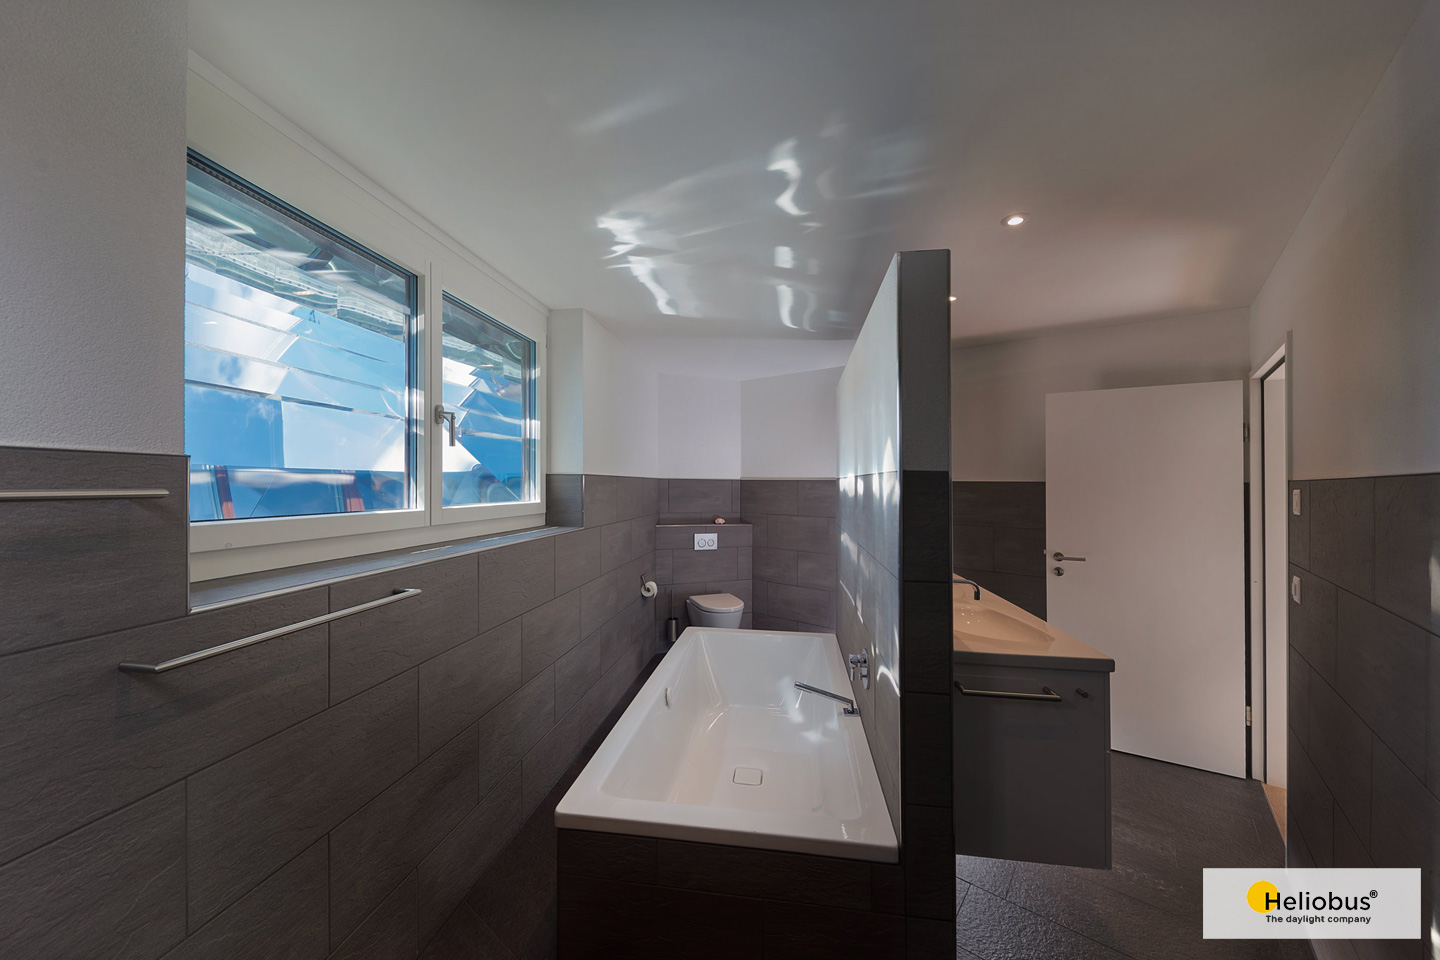 Innenaufnahme eines Untergeschoss Badezimmer, dass mit einem Lichtschacht Spiegelsystem von Heliobus für mehr Licht sorgt